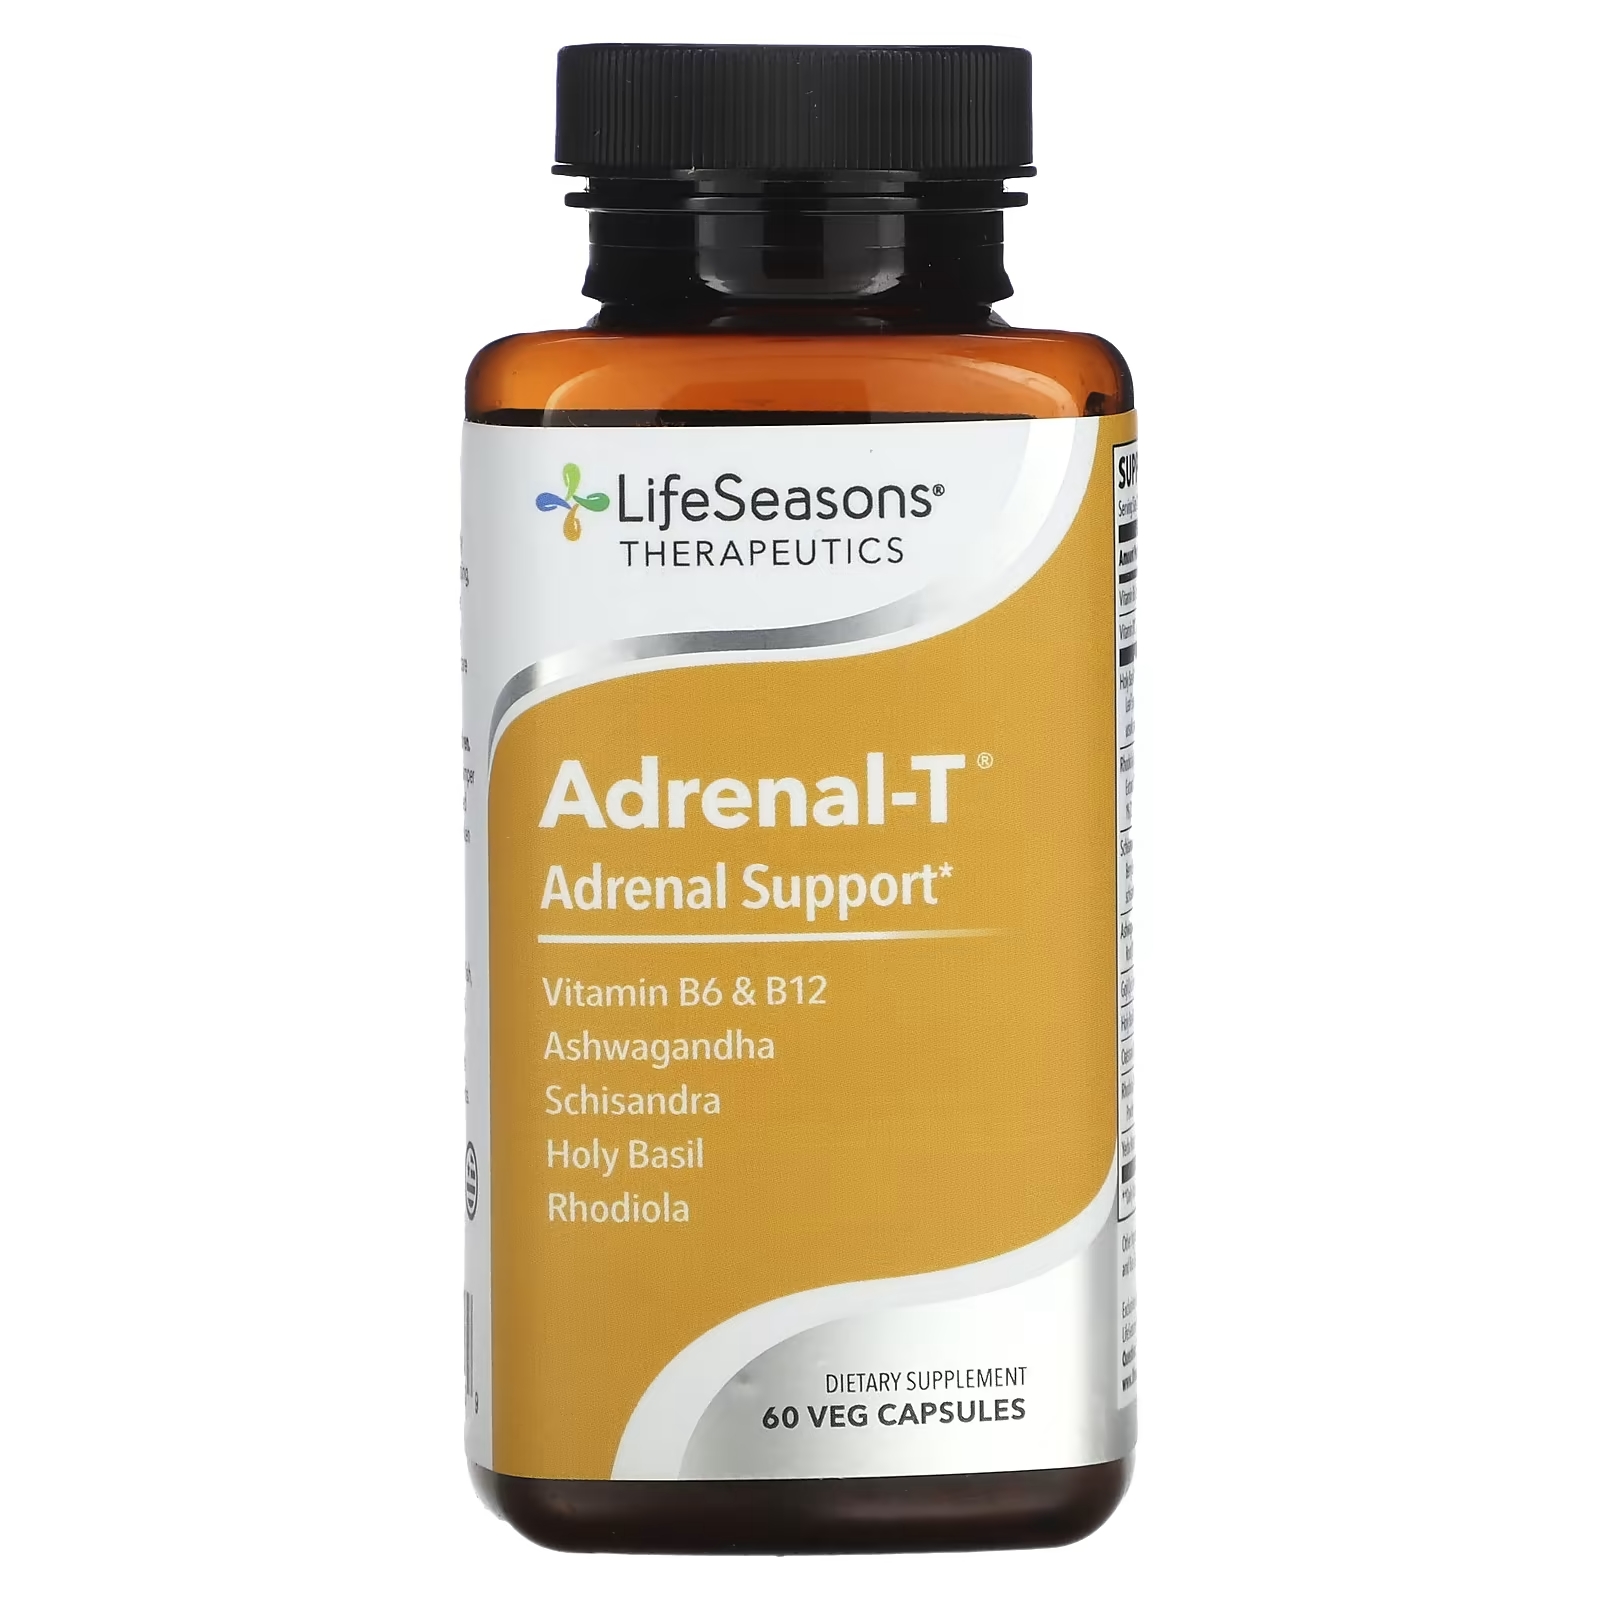 LifeSeasons Adrenal-T адреналиновая поддержка, 60 вегетарианских капсул lifeseasons adrenal t адреналиновая поддержка 60 вегетарианских капсул